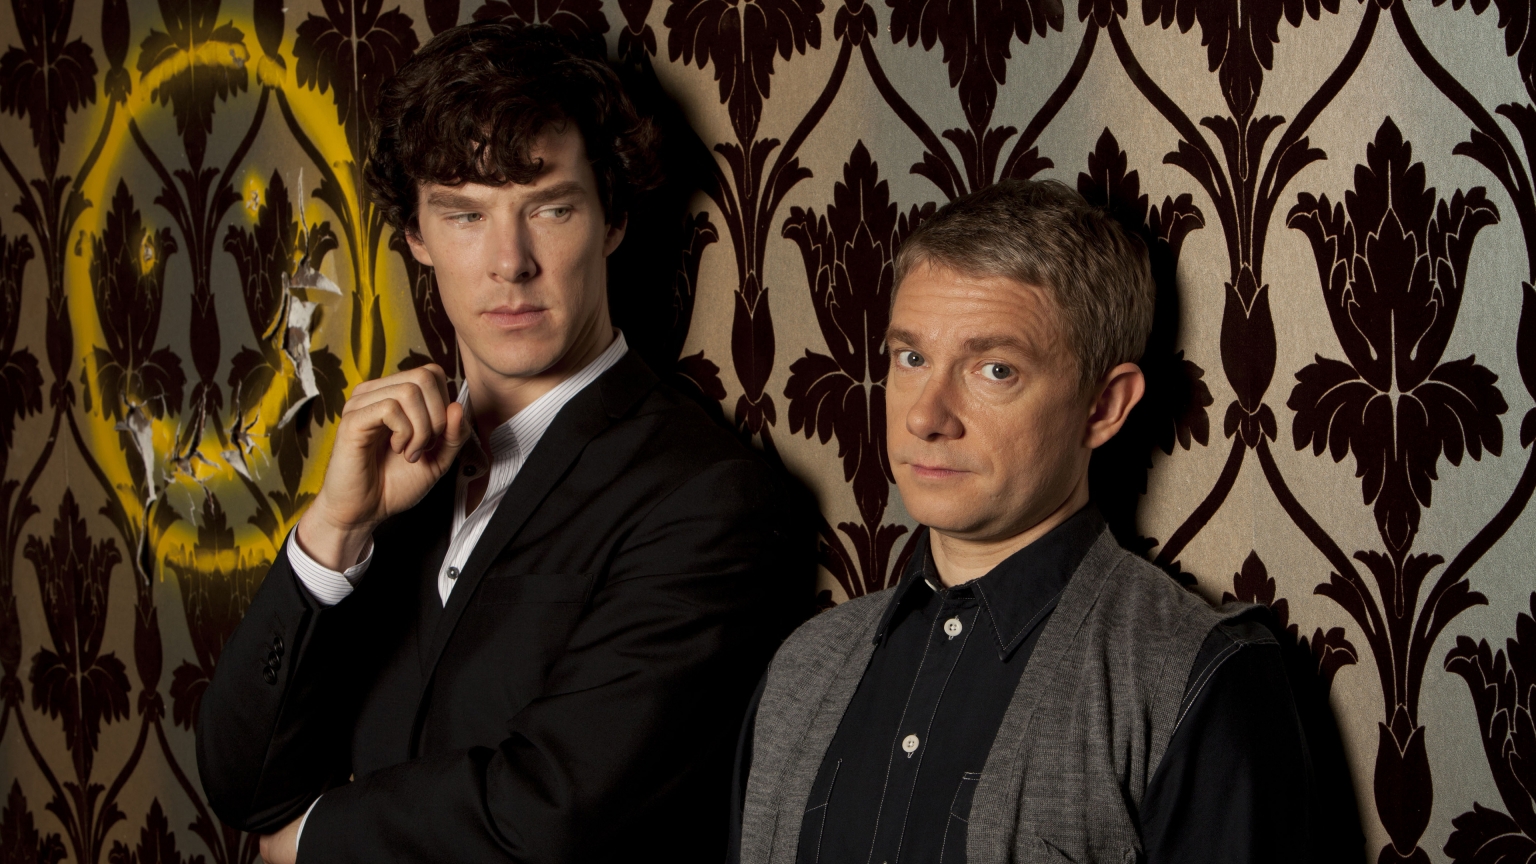 Sherlock and John for 1536 x 864 HDTV resolution